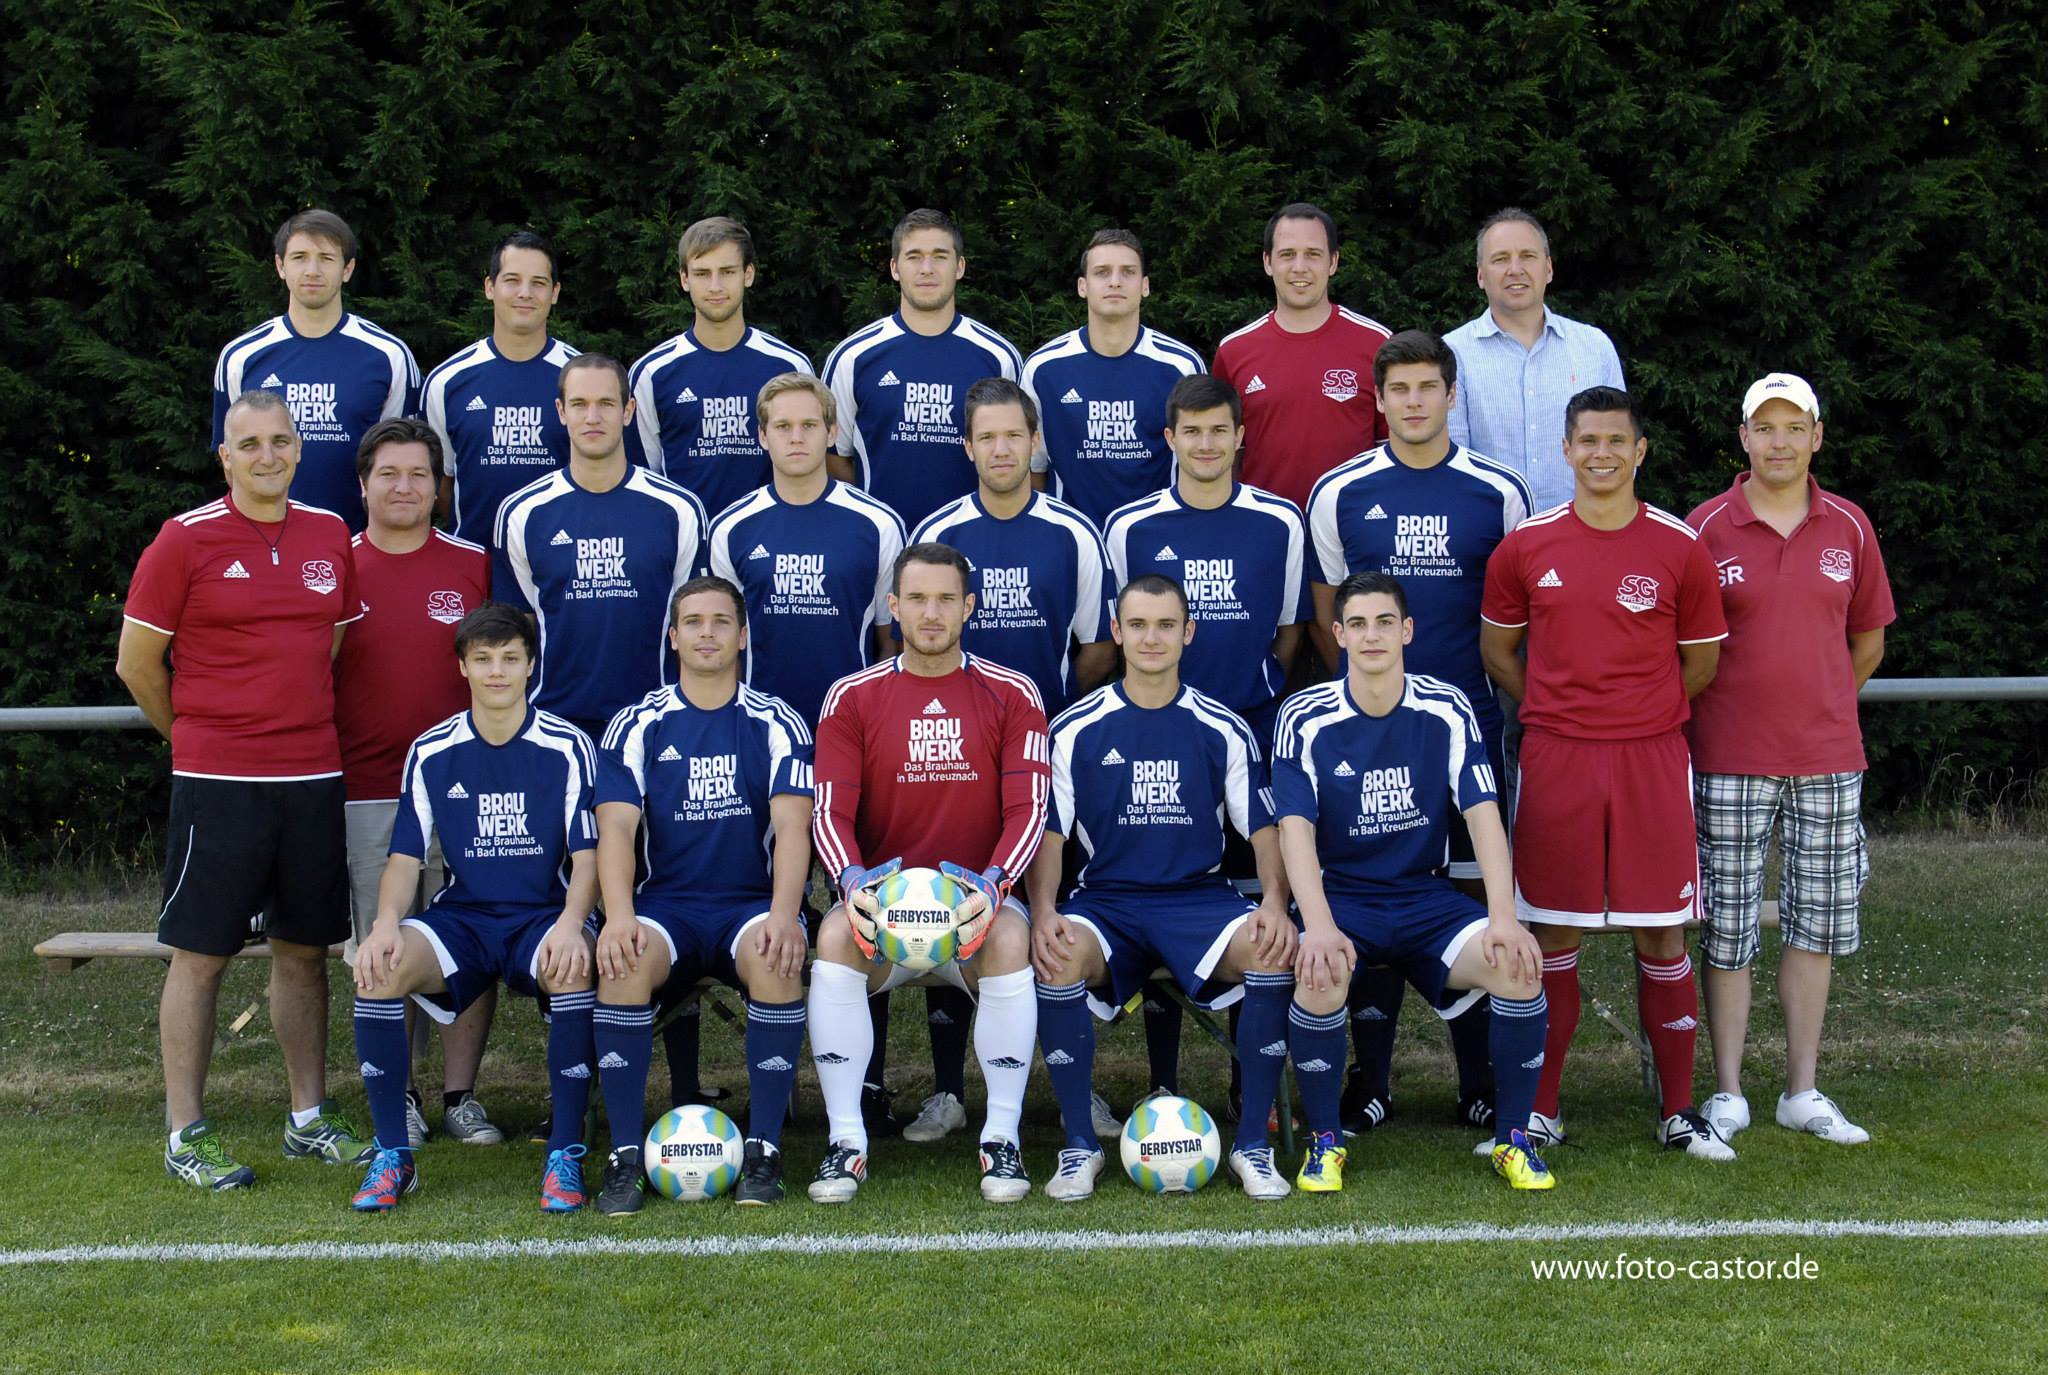 Mannschaftsfoto/Teamfoto von SG Hffelsheim/Niederh.